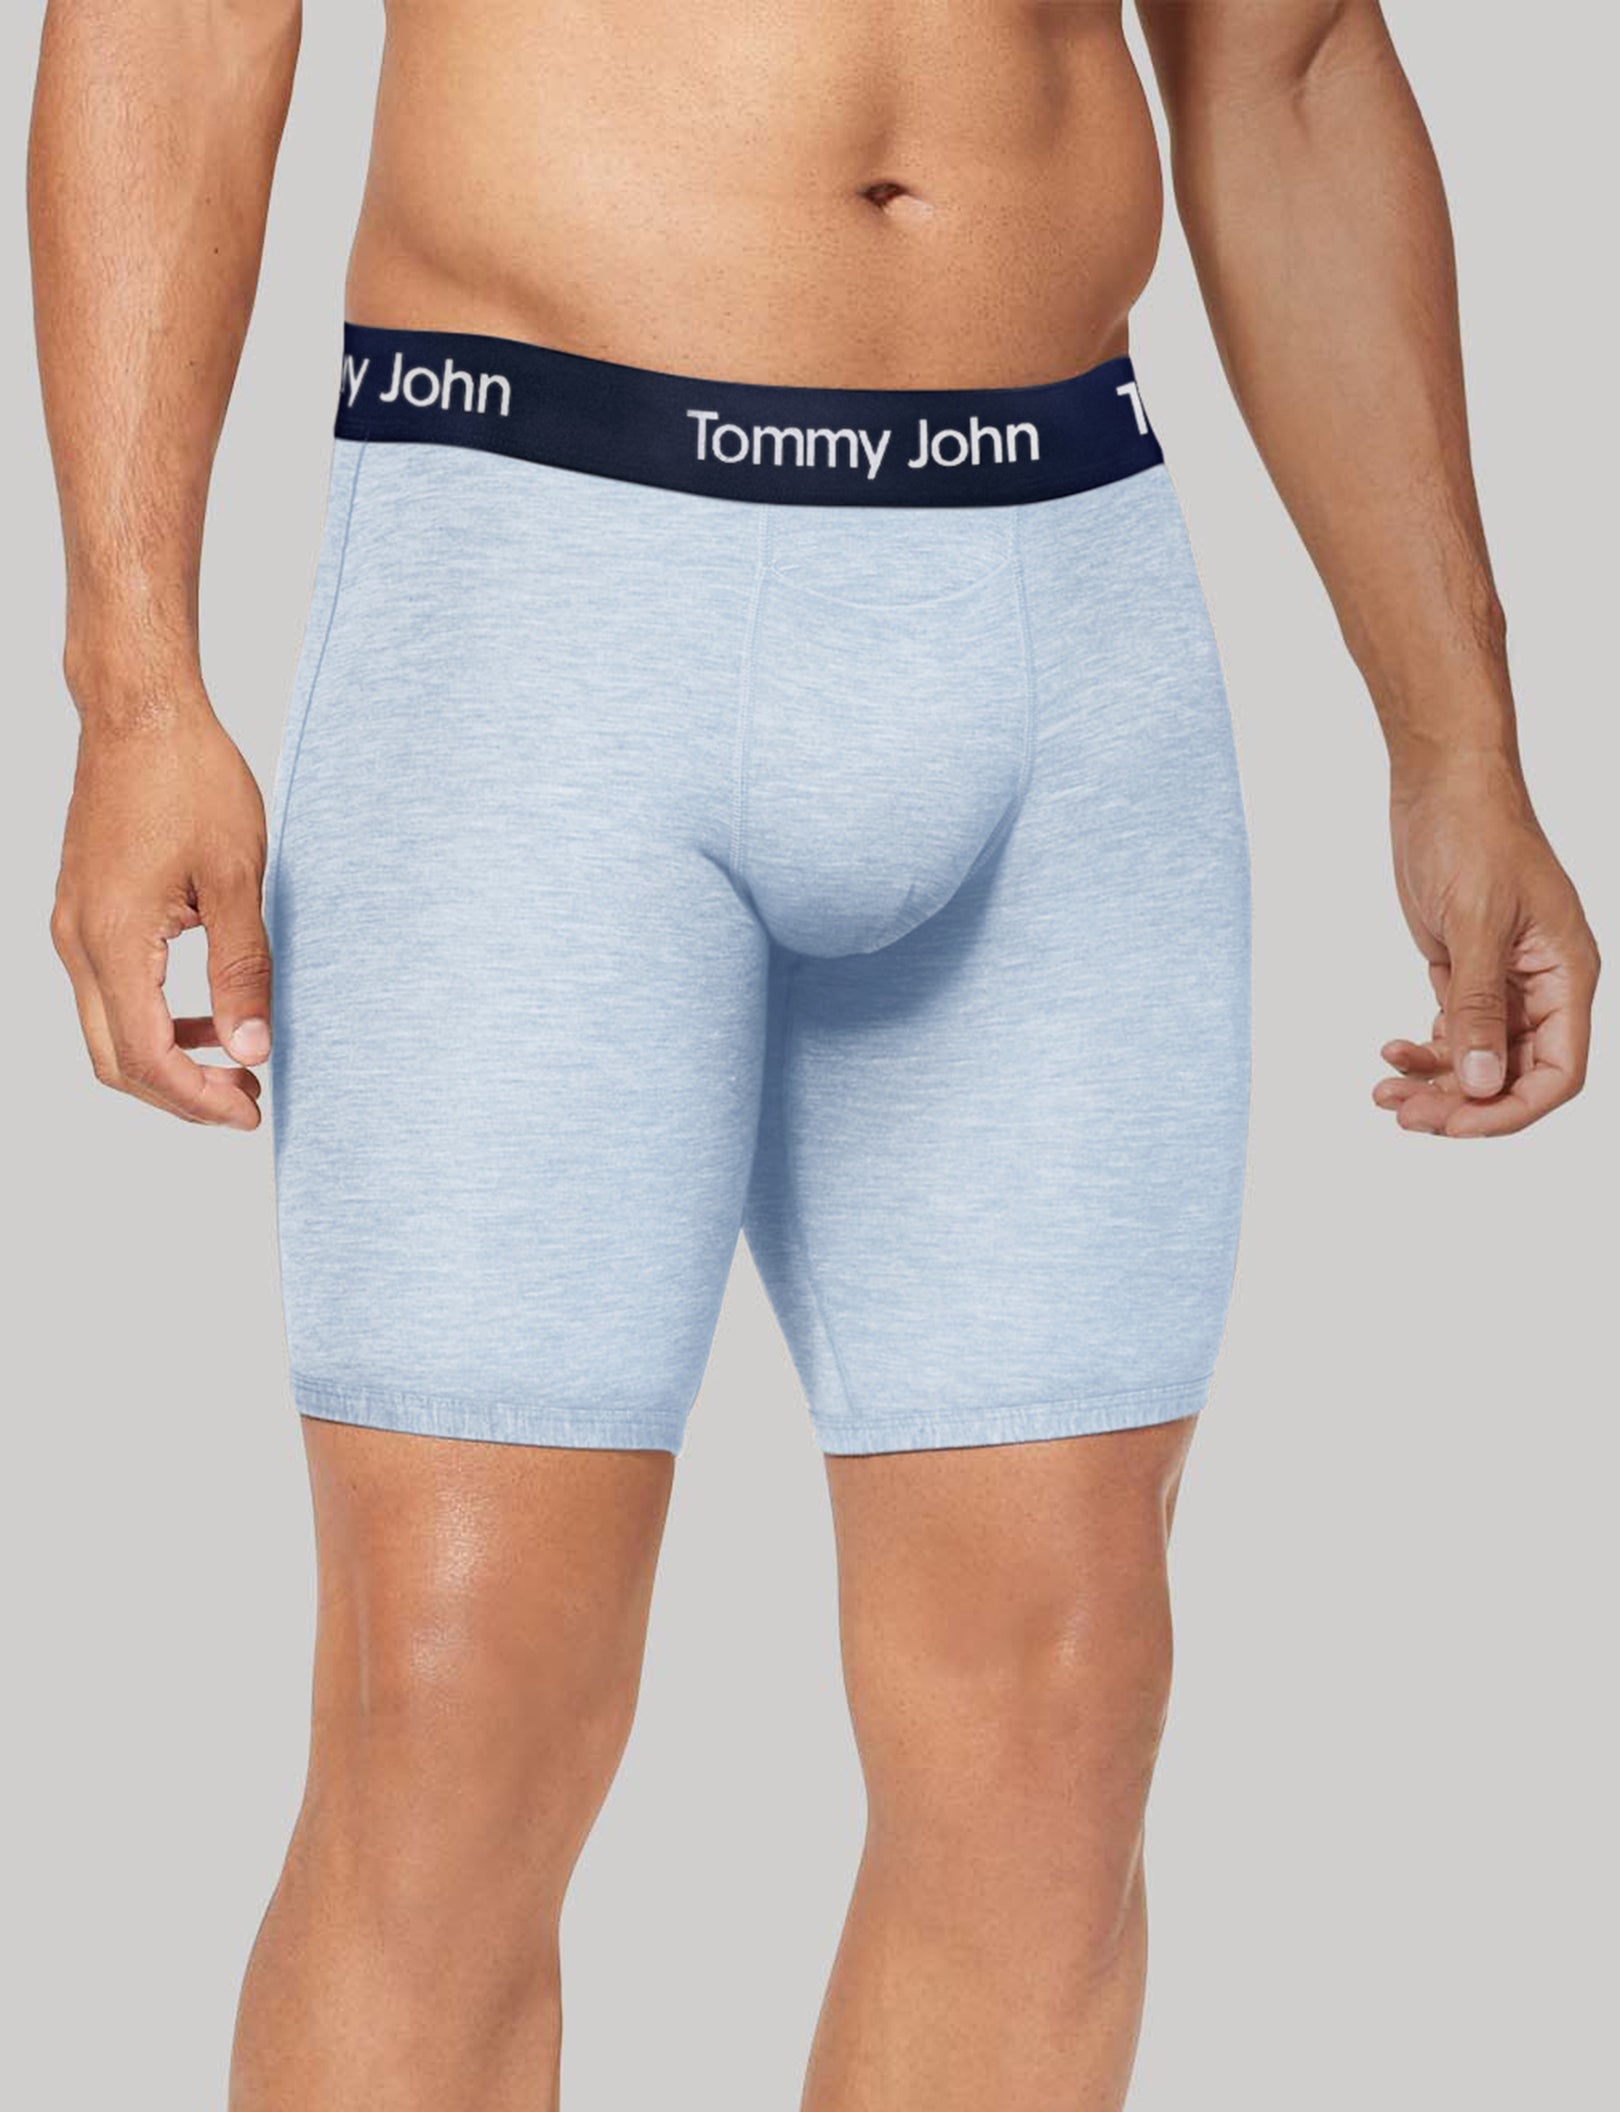 Tommy John Men's Second Skin Underwear XL Boxer Briefs 4 Botanical Garden